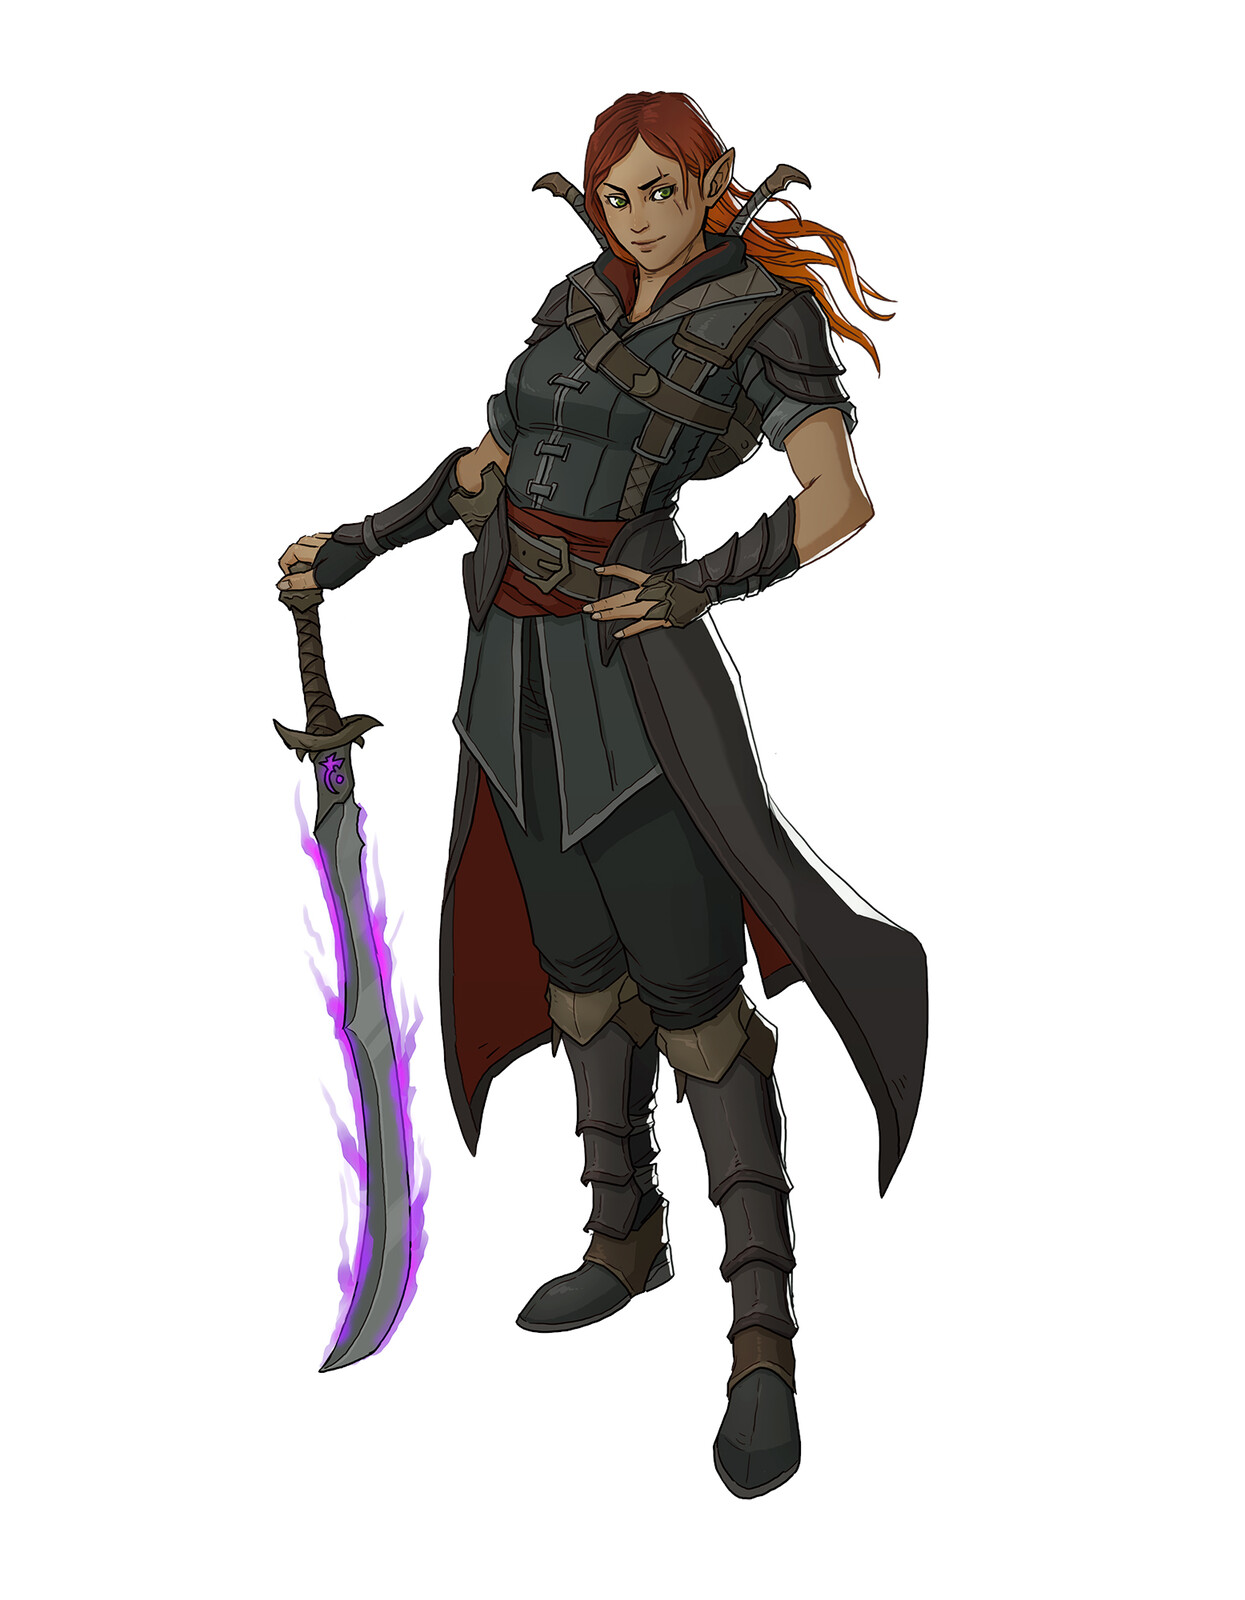 Teshiera Blackthorn, Half-elf Hexblade Warlock